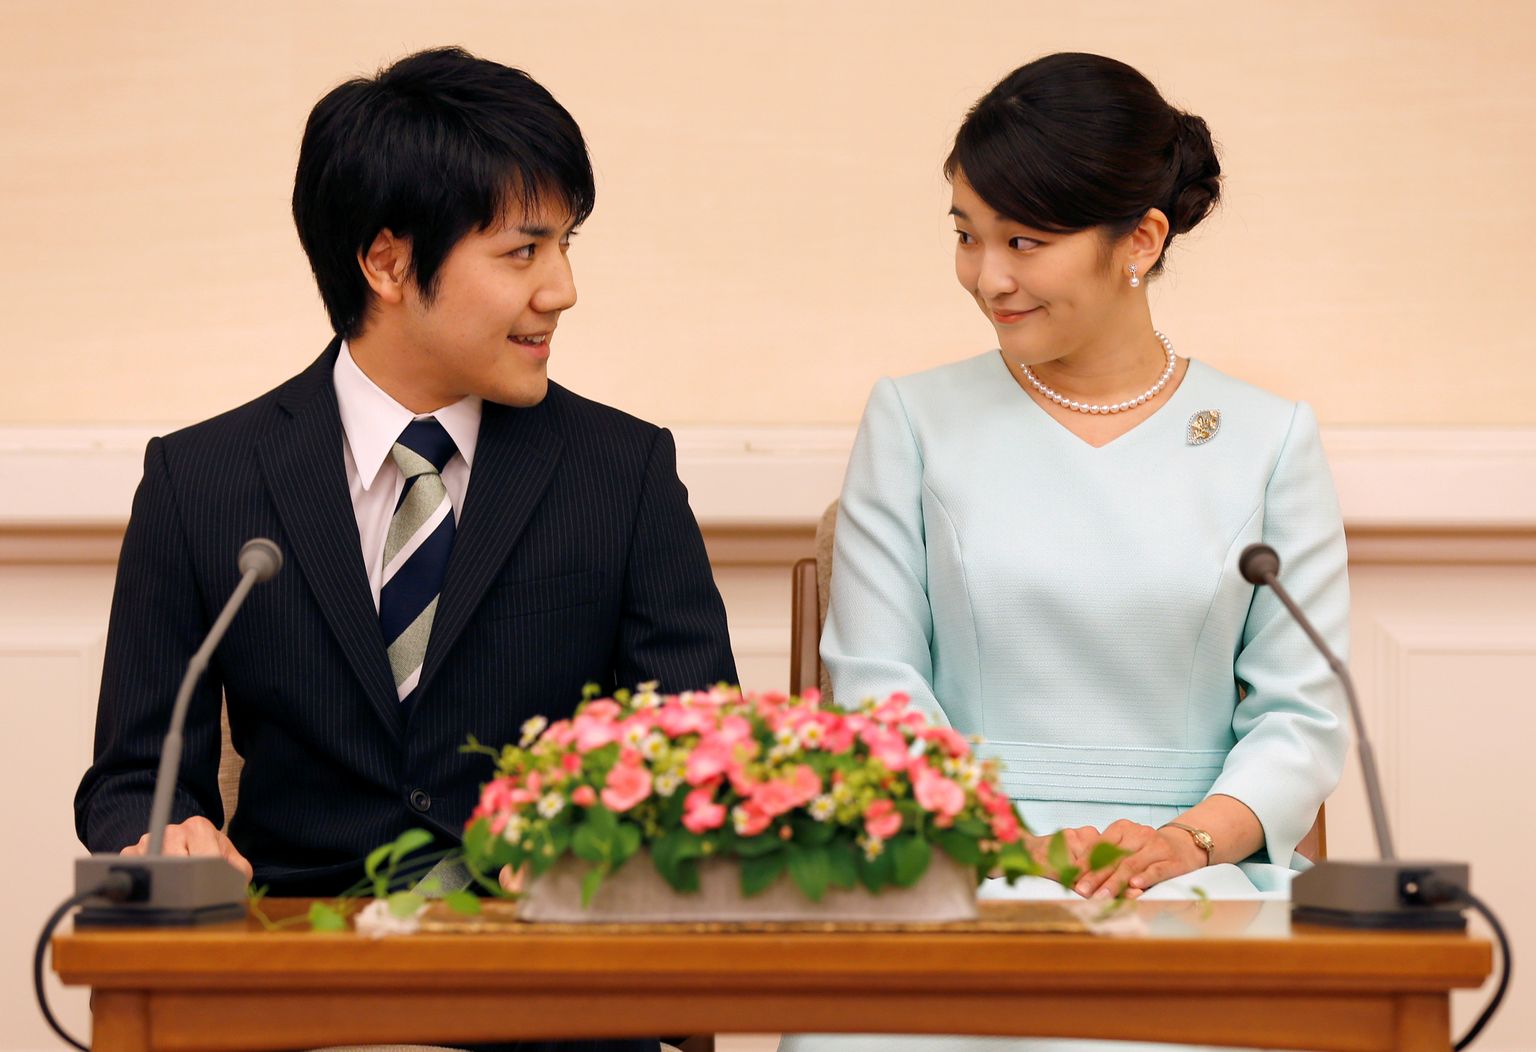 Jaapani printsess Mako ja Kei Komuro teatasid oma kihlumisest 3. septembril 2017